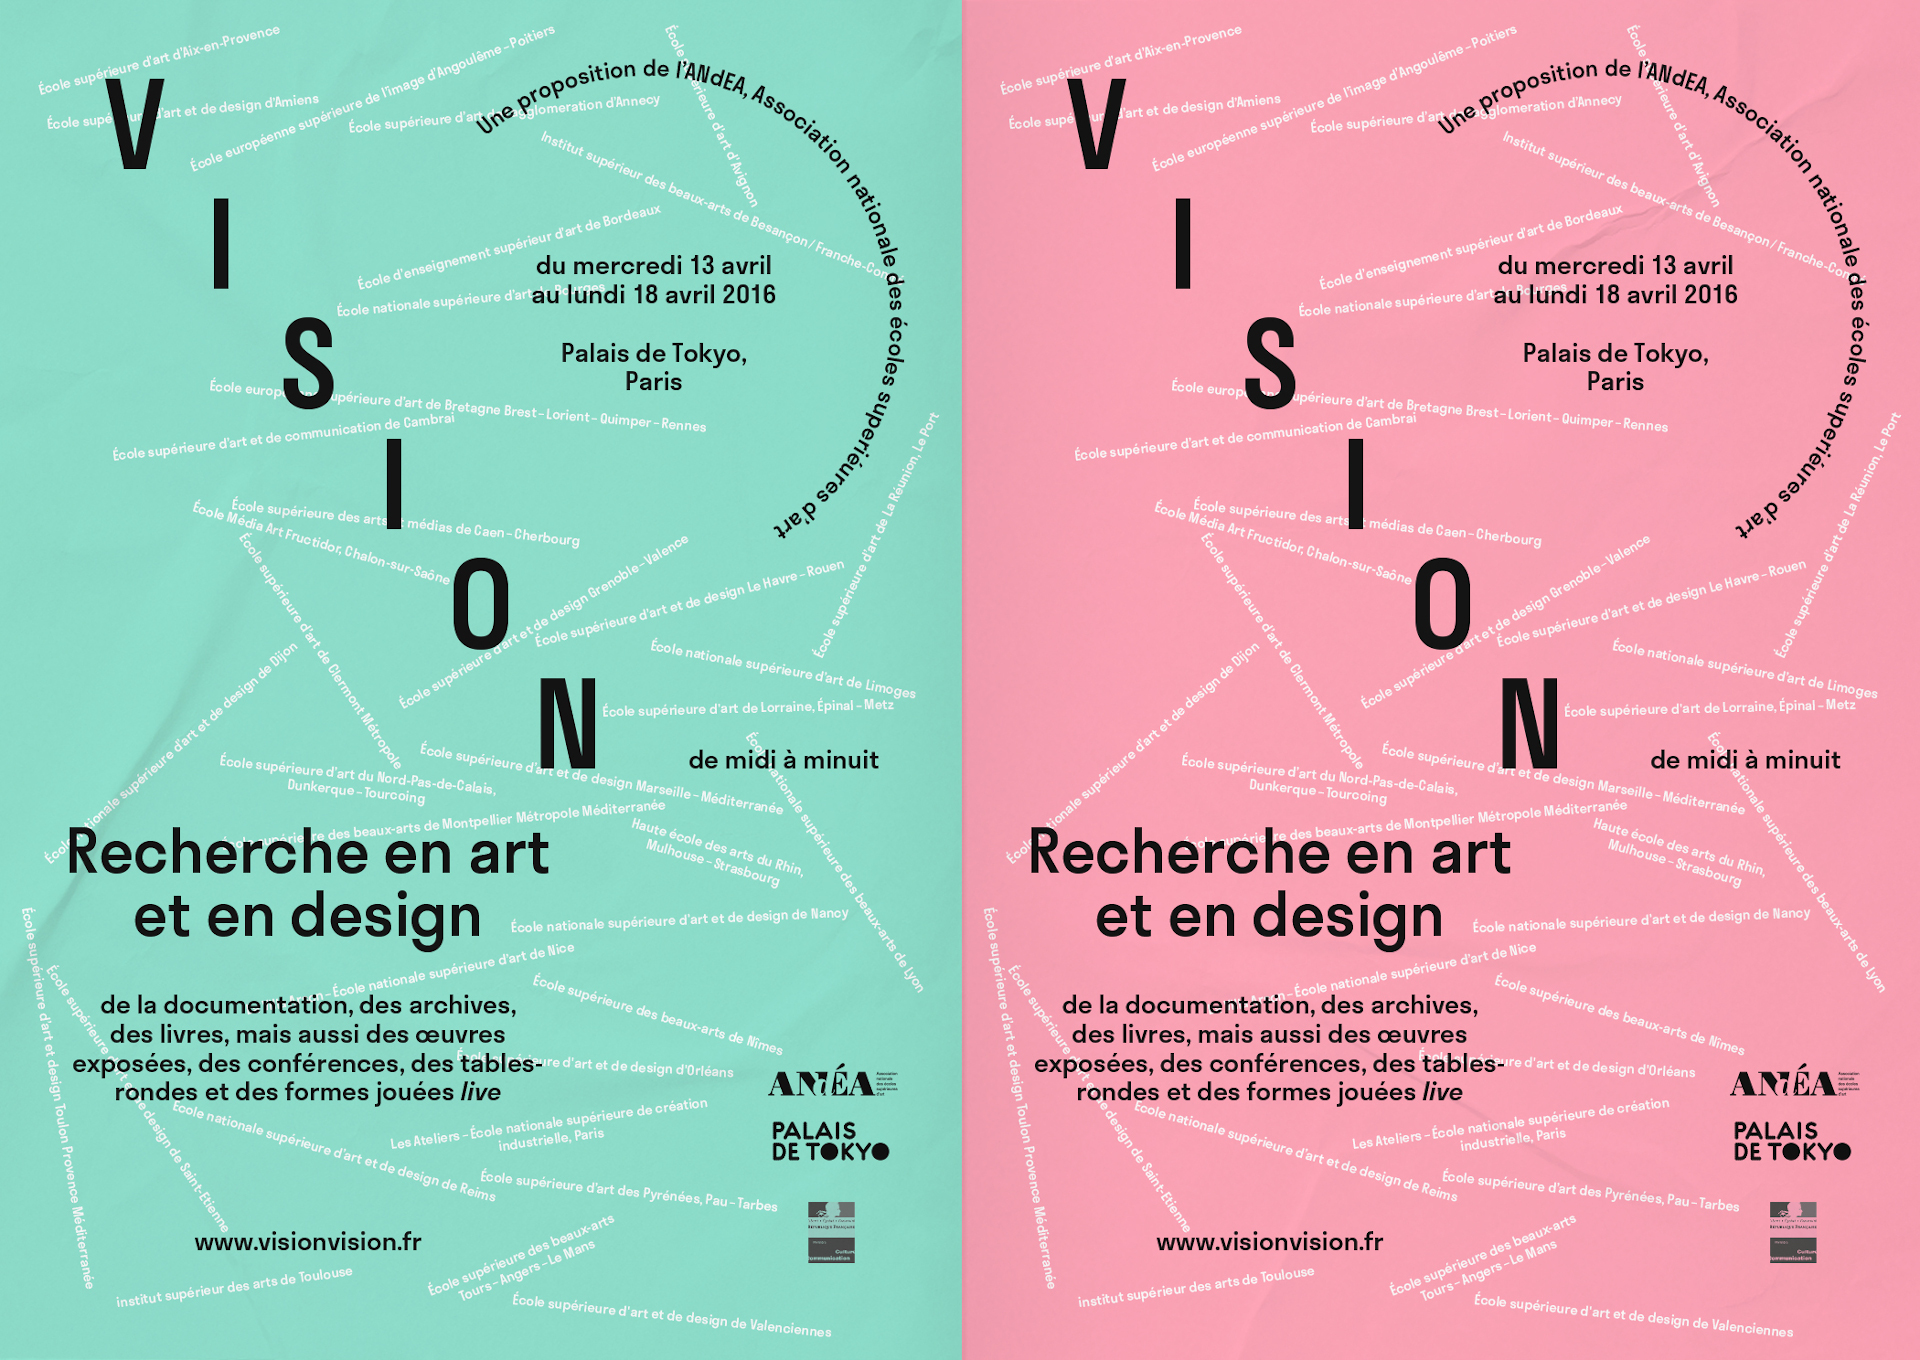 Visual from the exhibition Vision, Recherche en art et en design